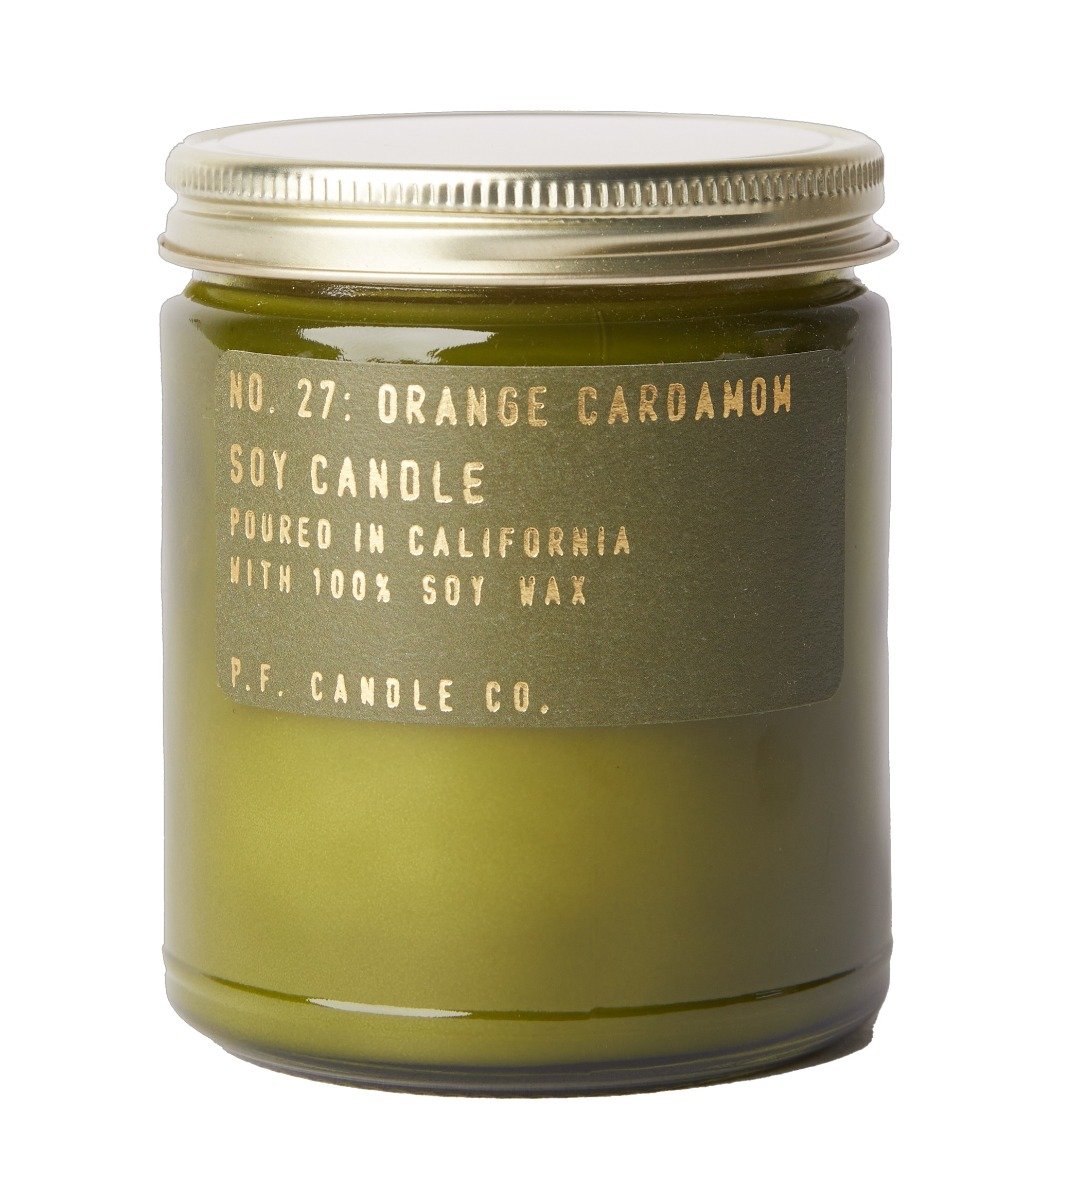  Orange Cardamom Candle